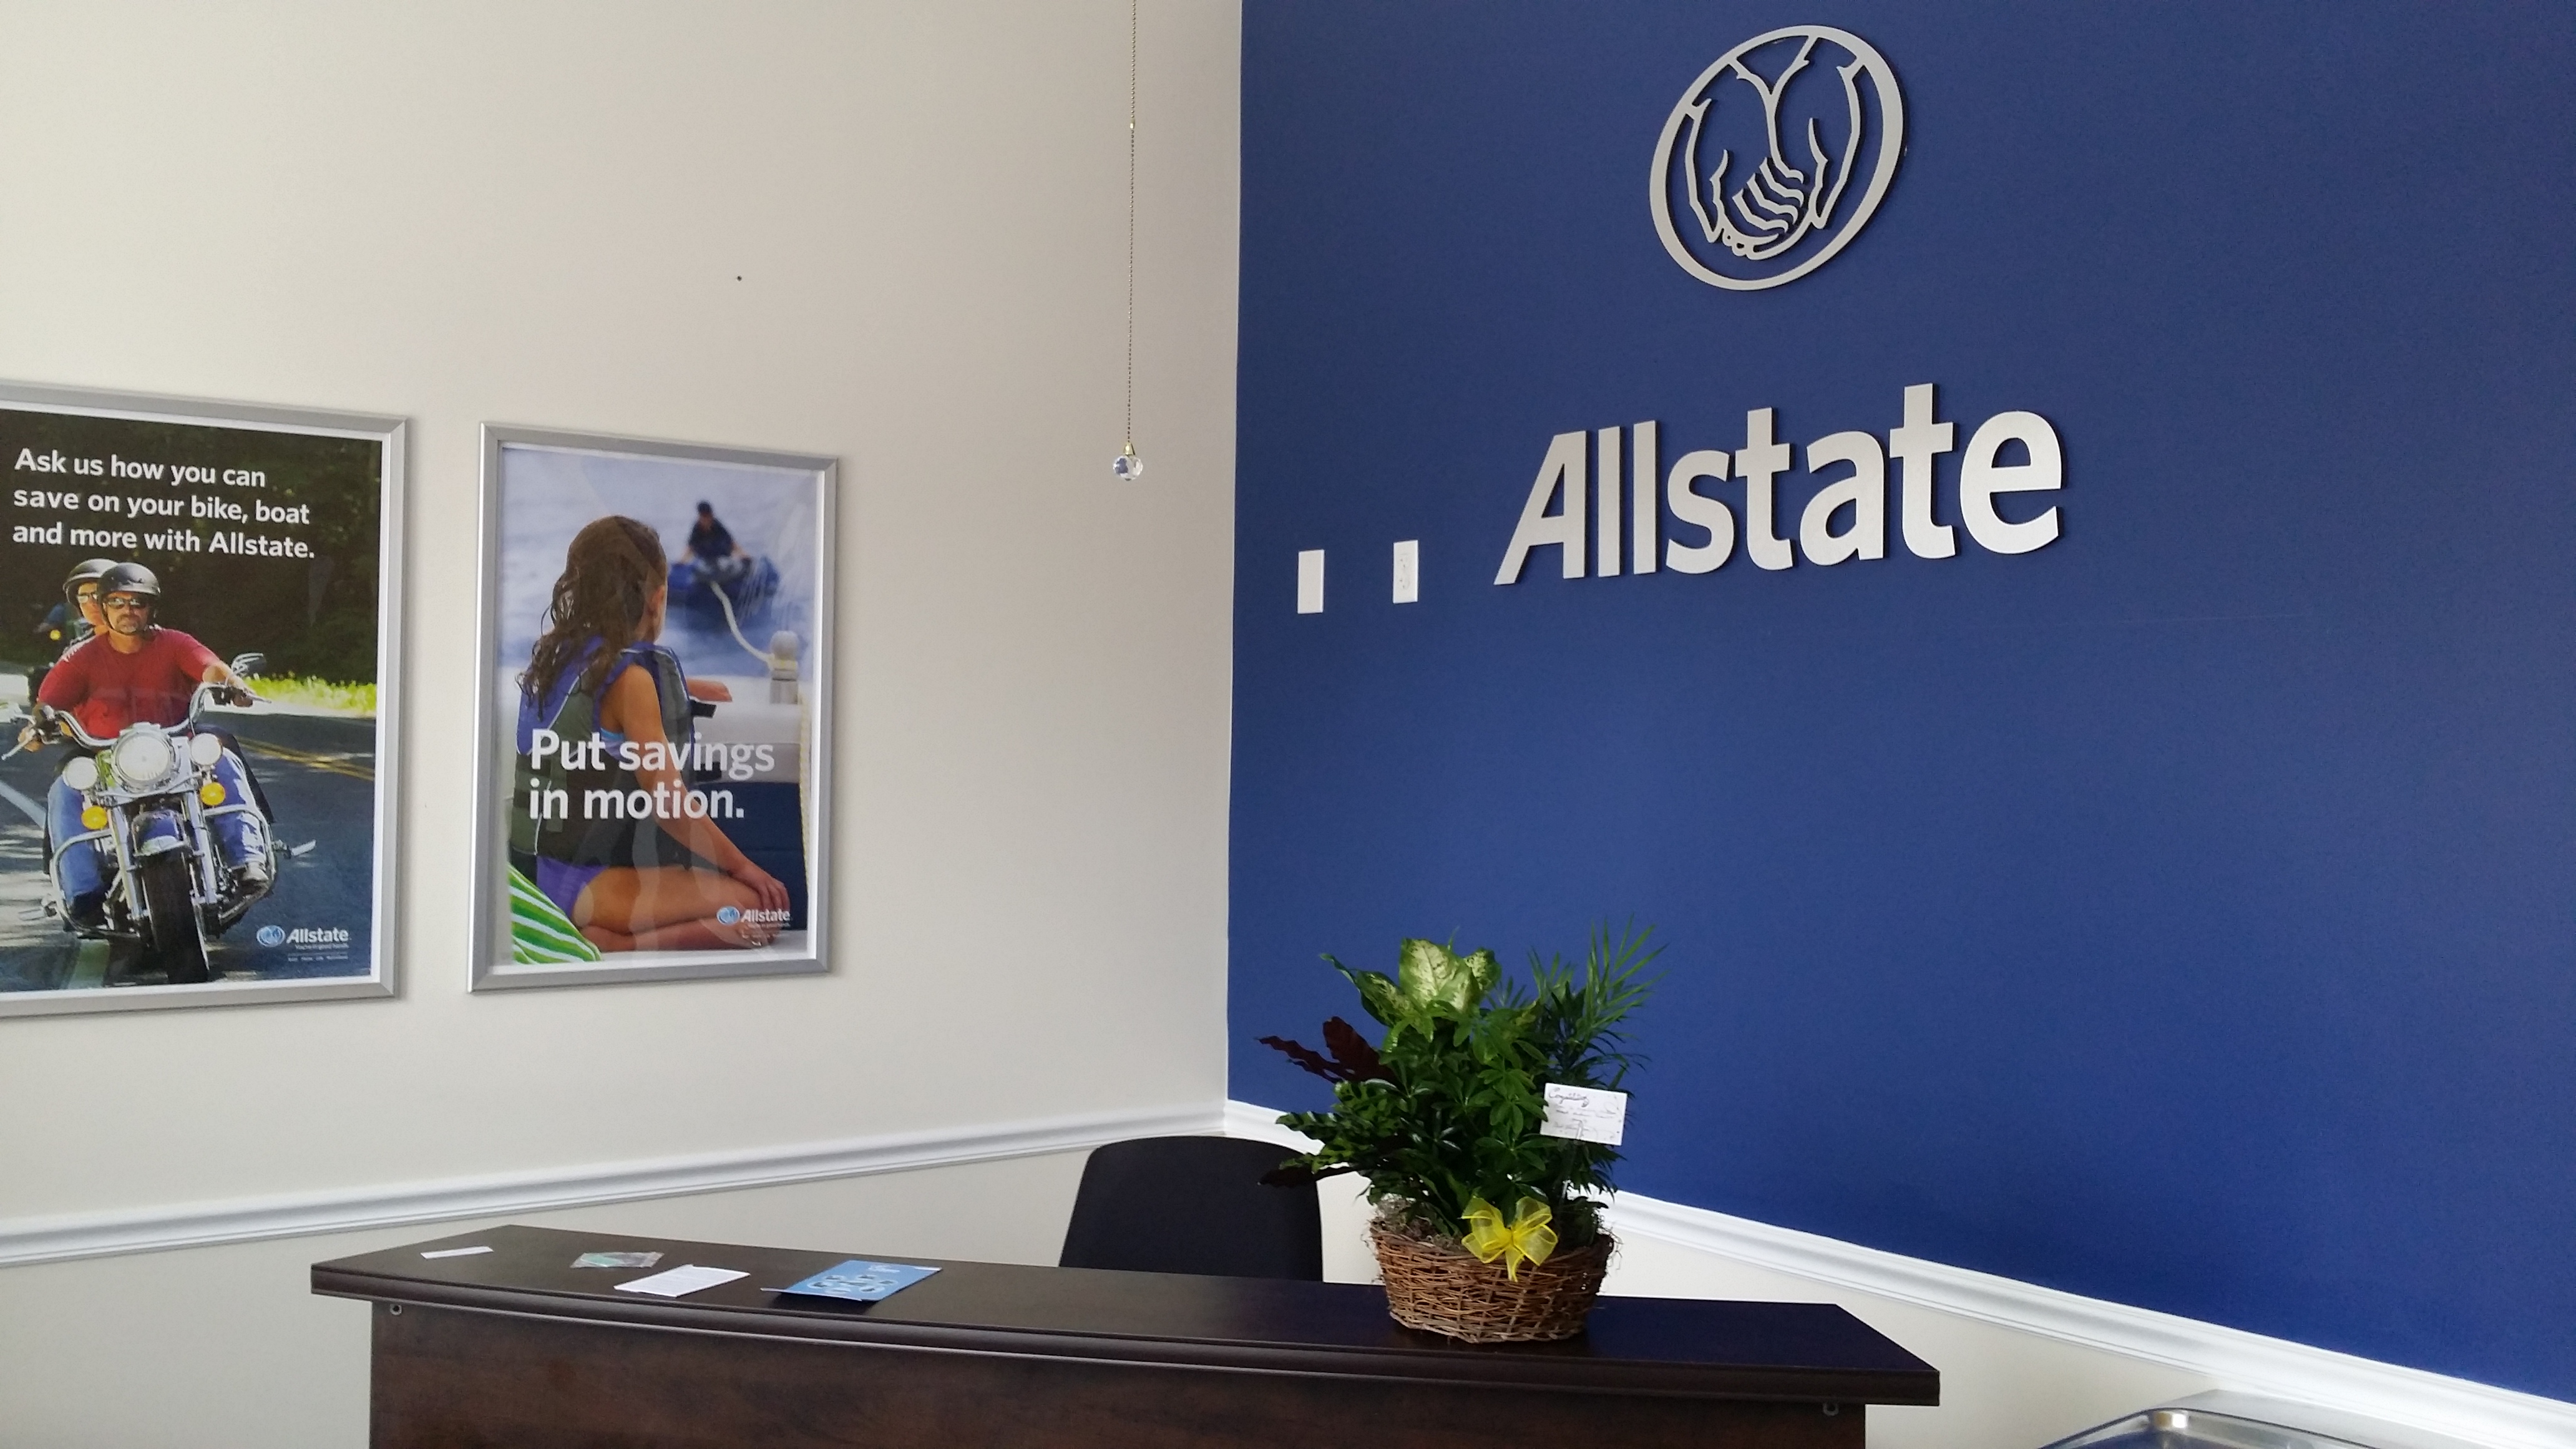 Shy Singleton: Allstate Insurance Photo